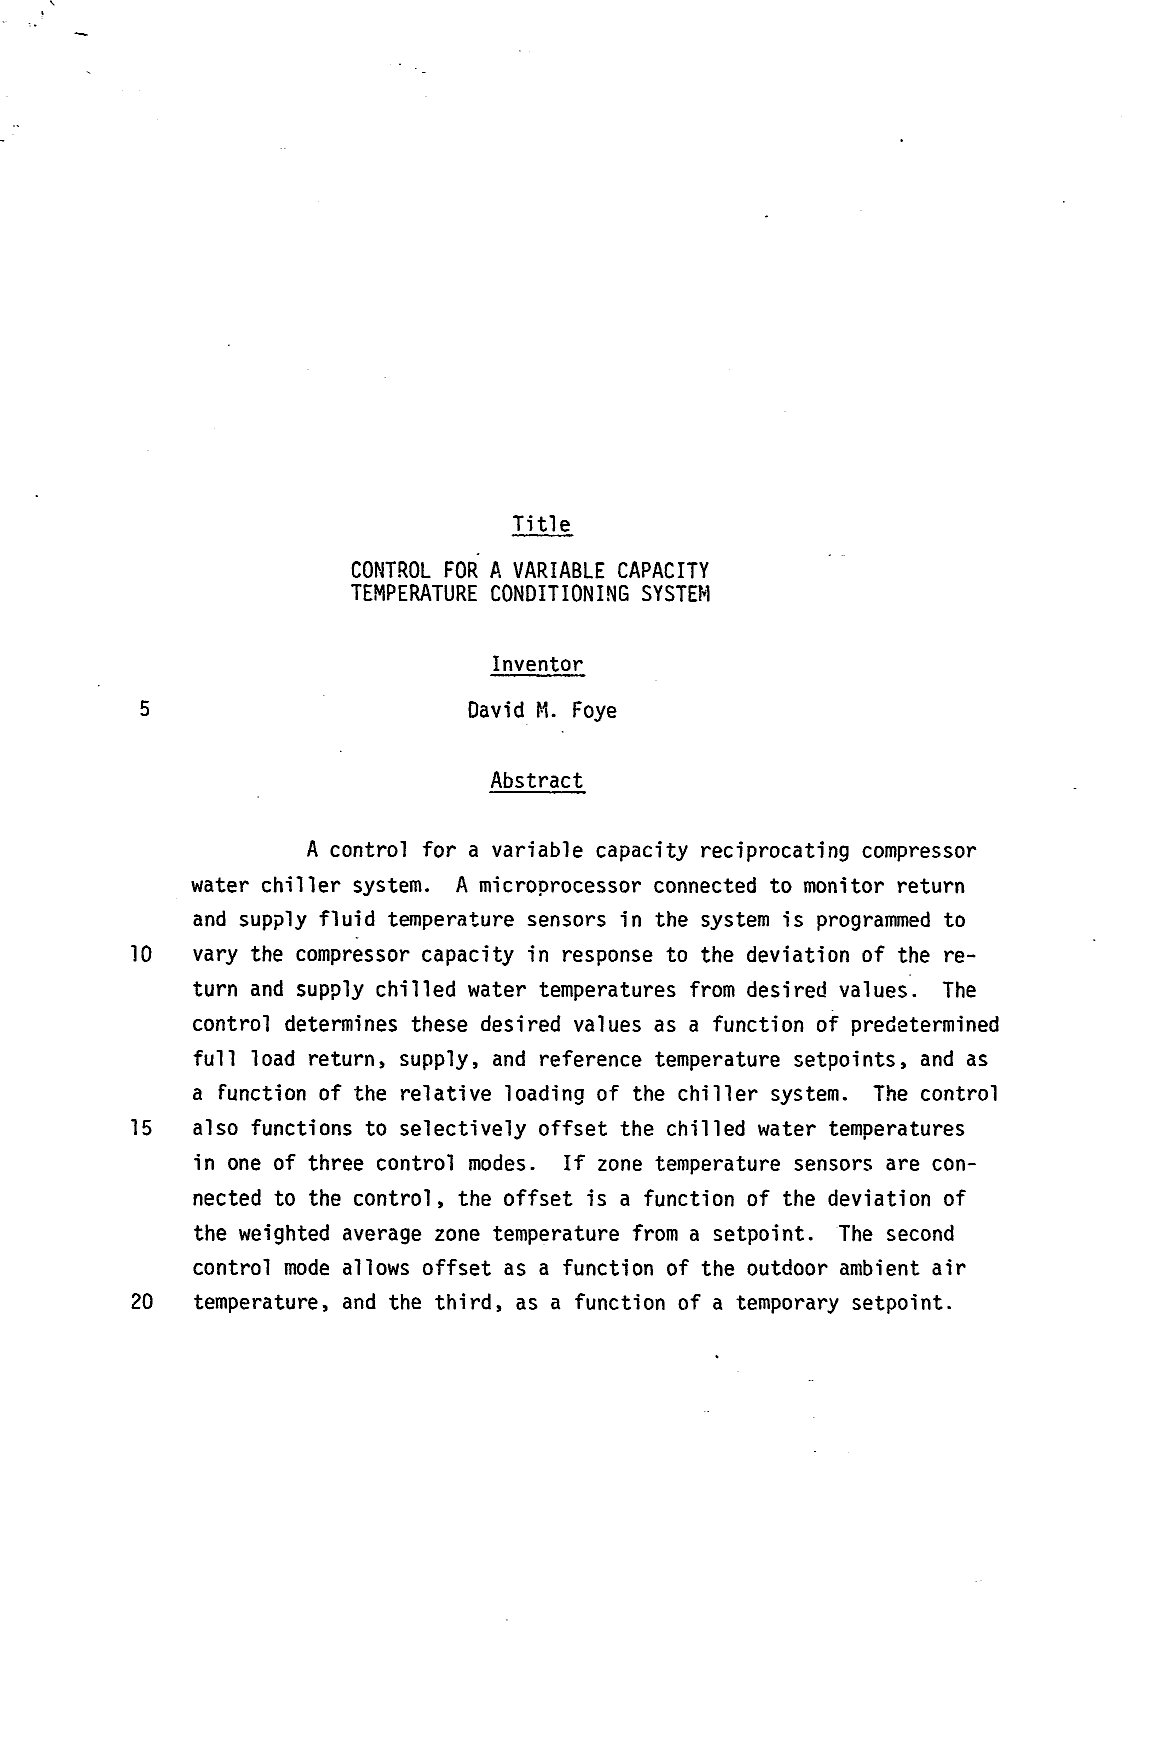 Document de brevet canadien 1211815. Abrégé 19930713. Image 1 de 1